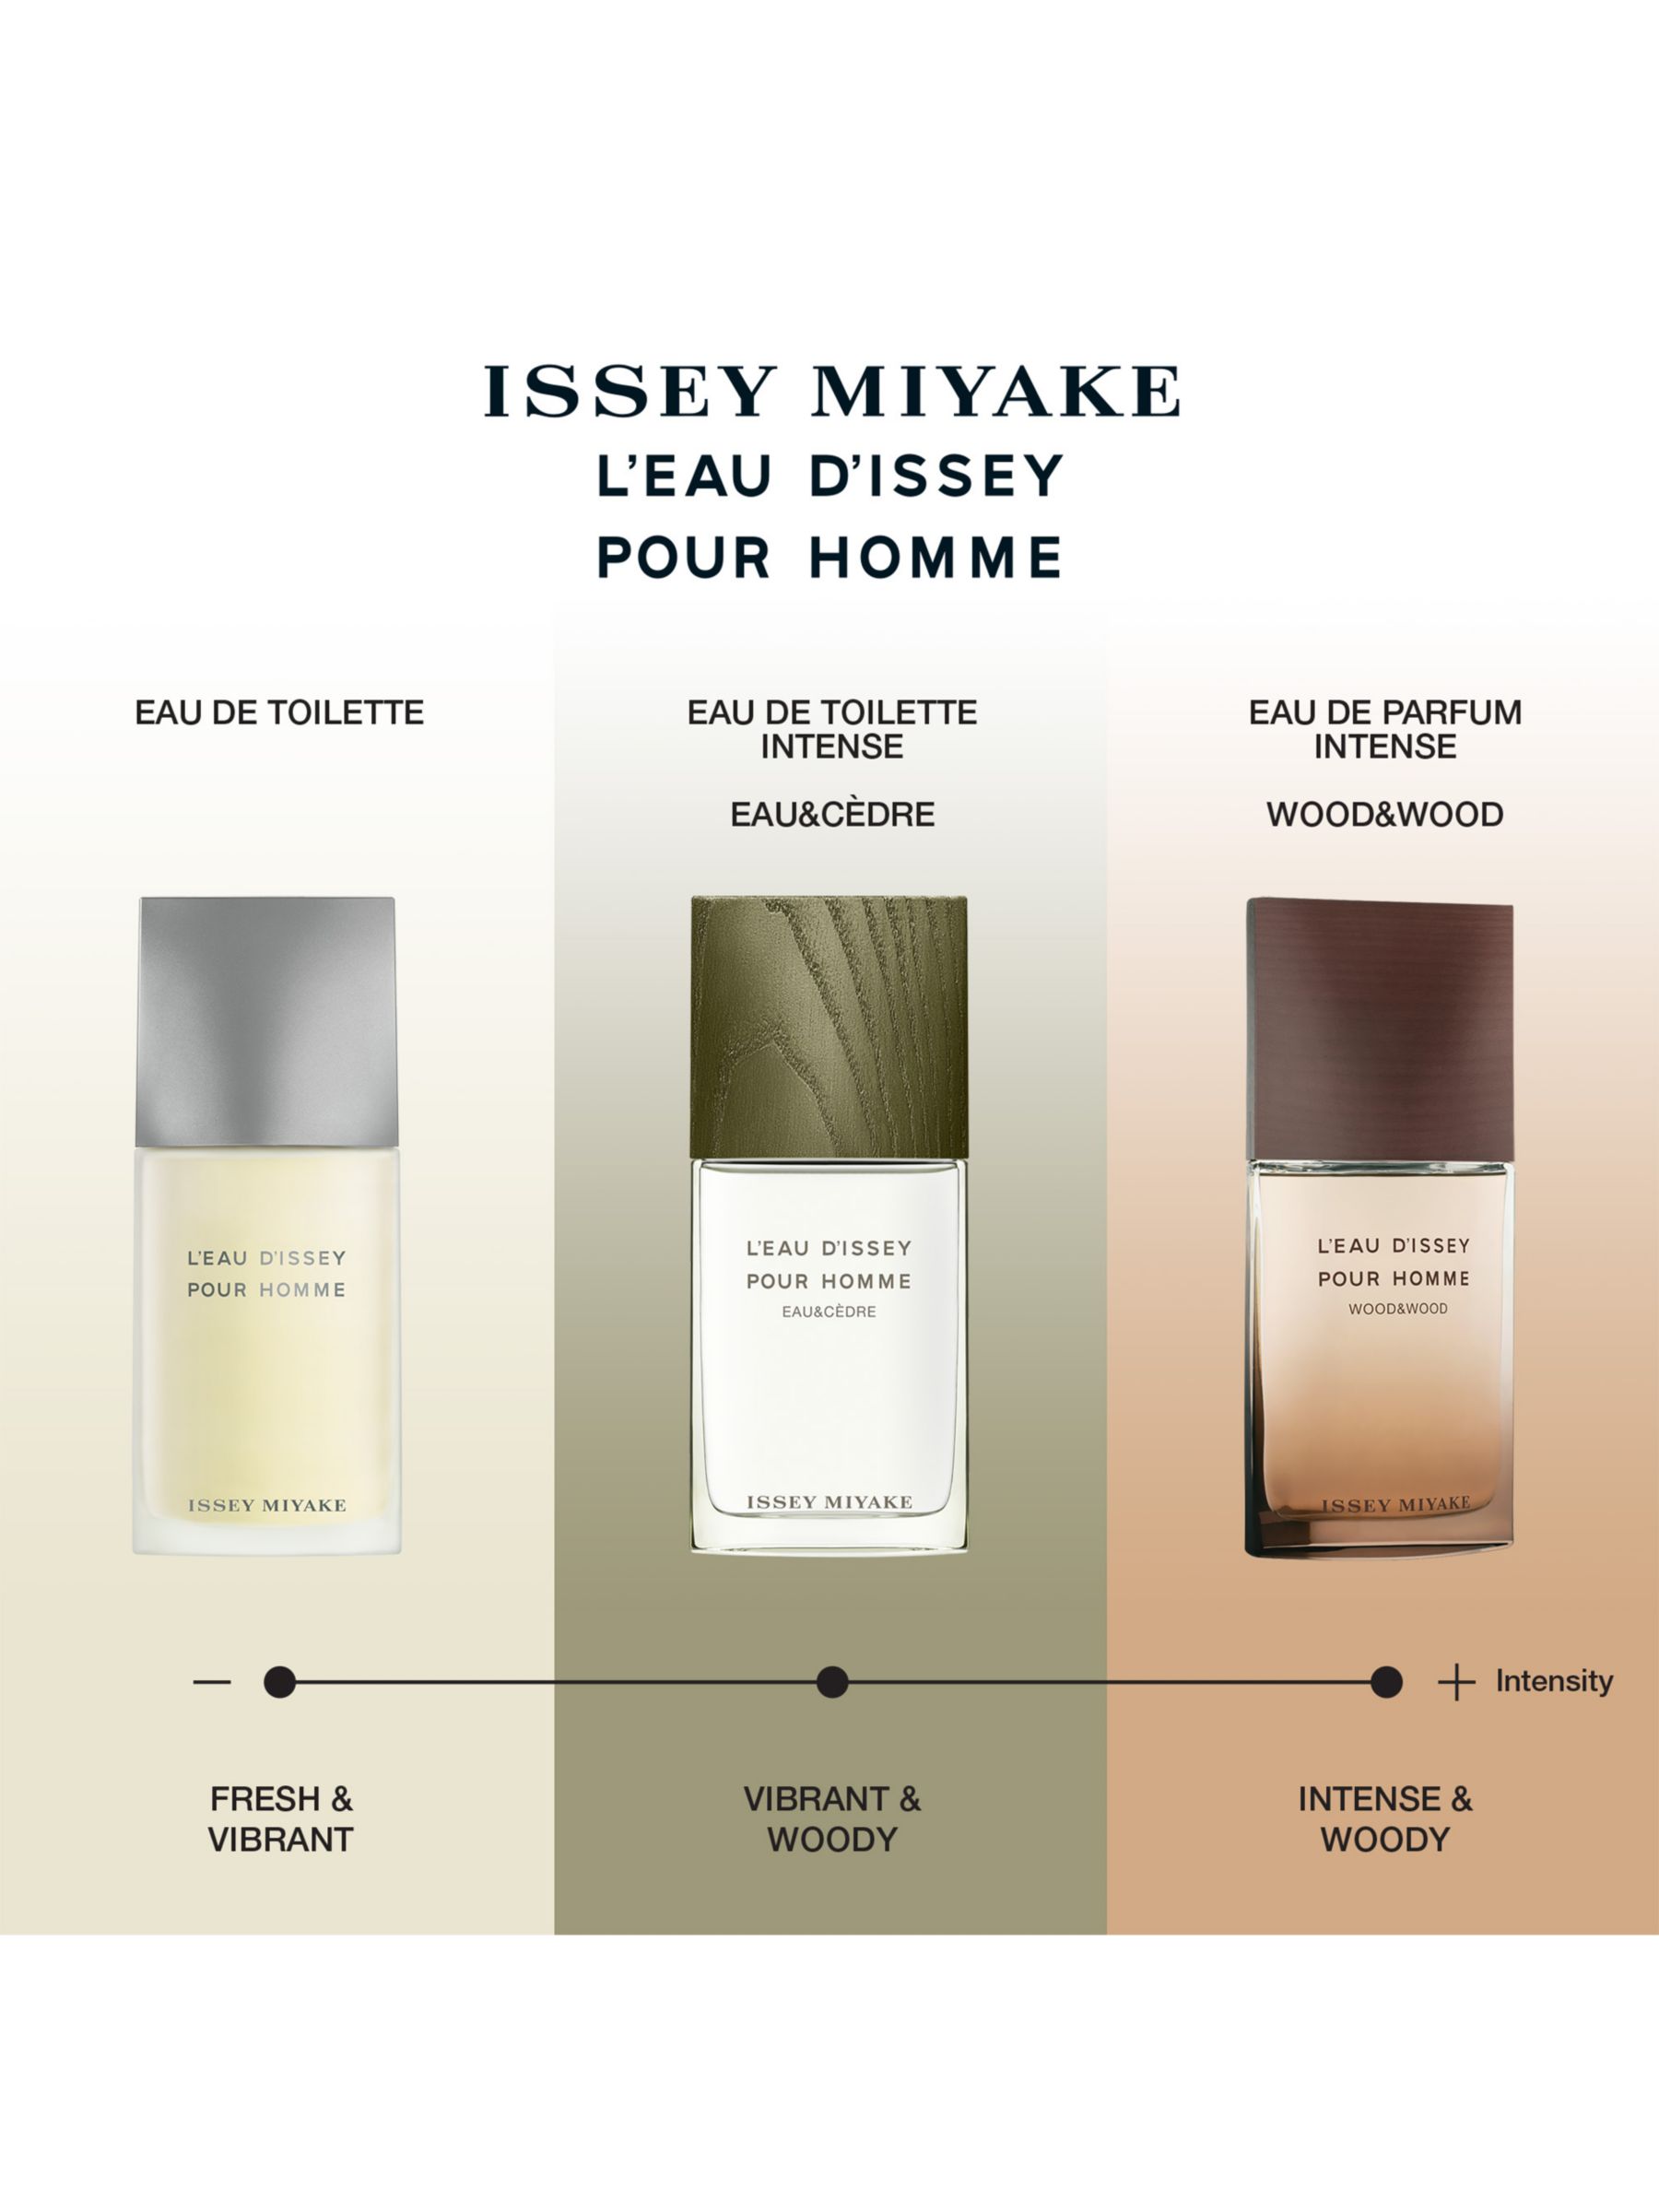 Issey Miyake L'Eau d'Issey Pour Homme Wood & Wood Eau de Parfum Intense, 50ml 4